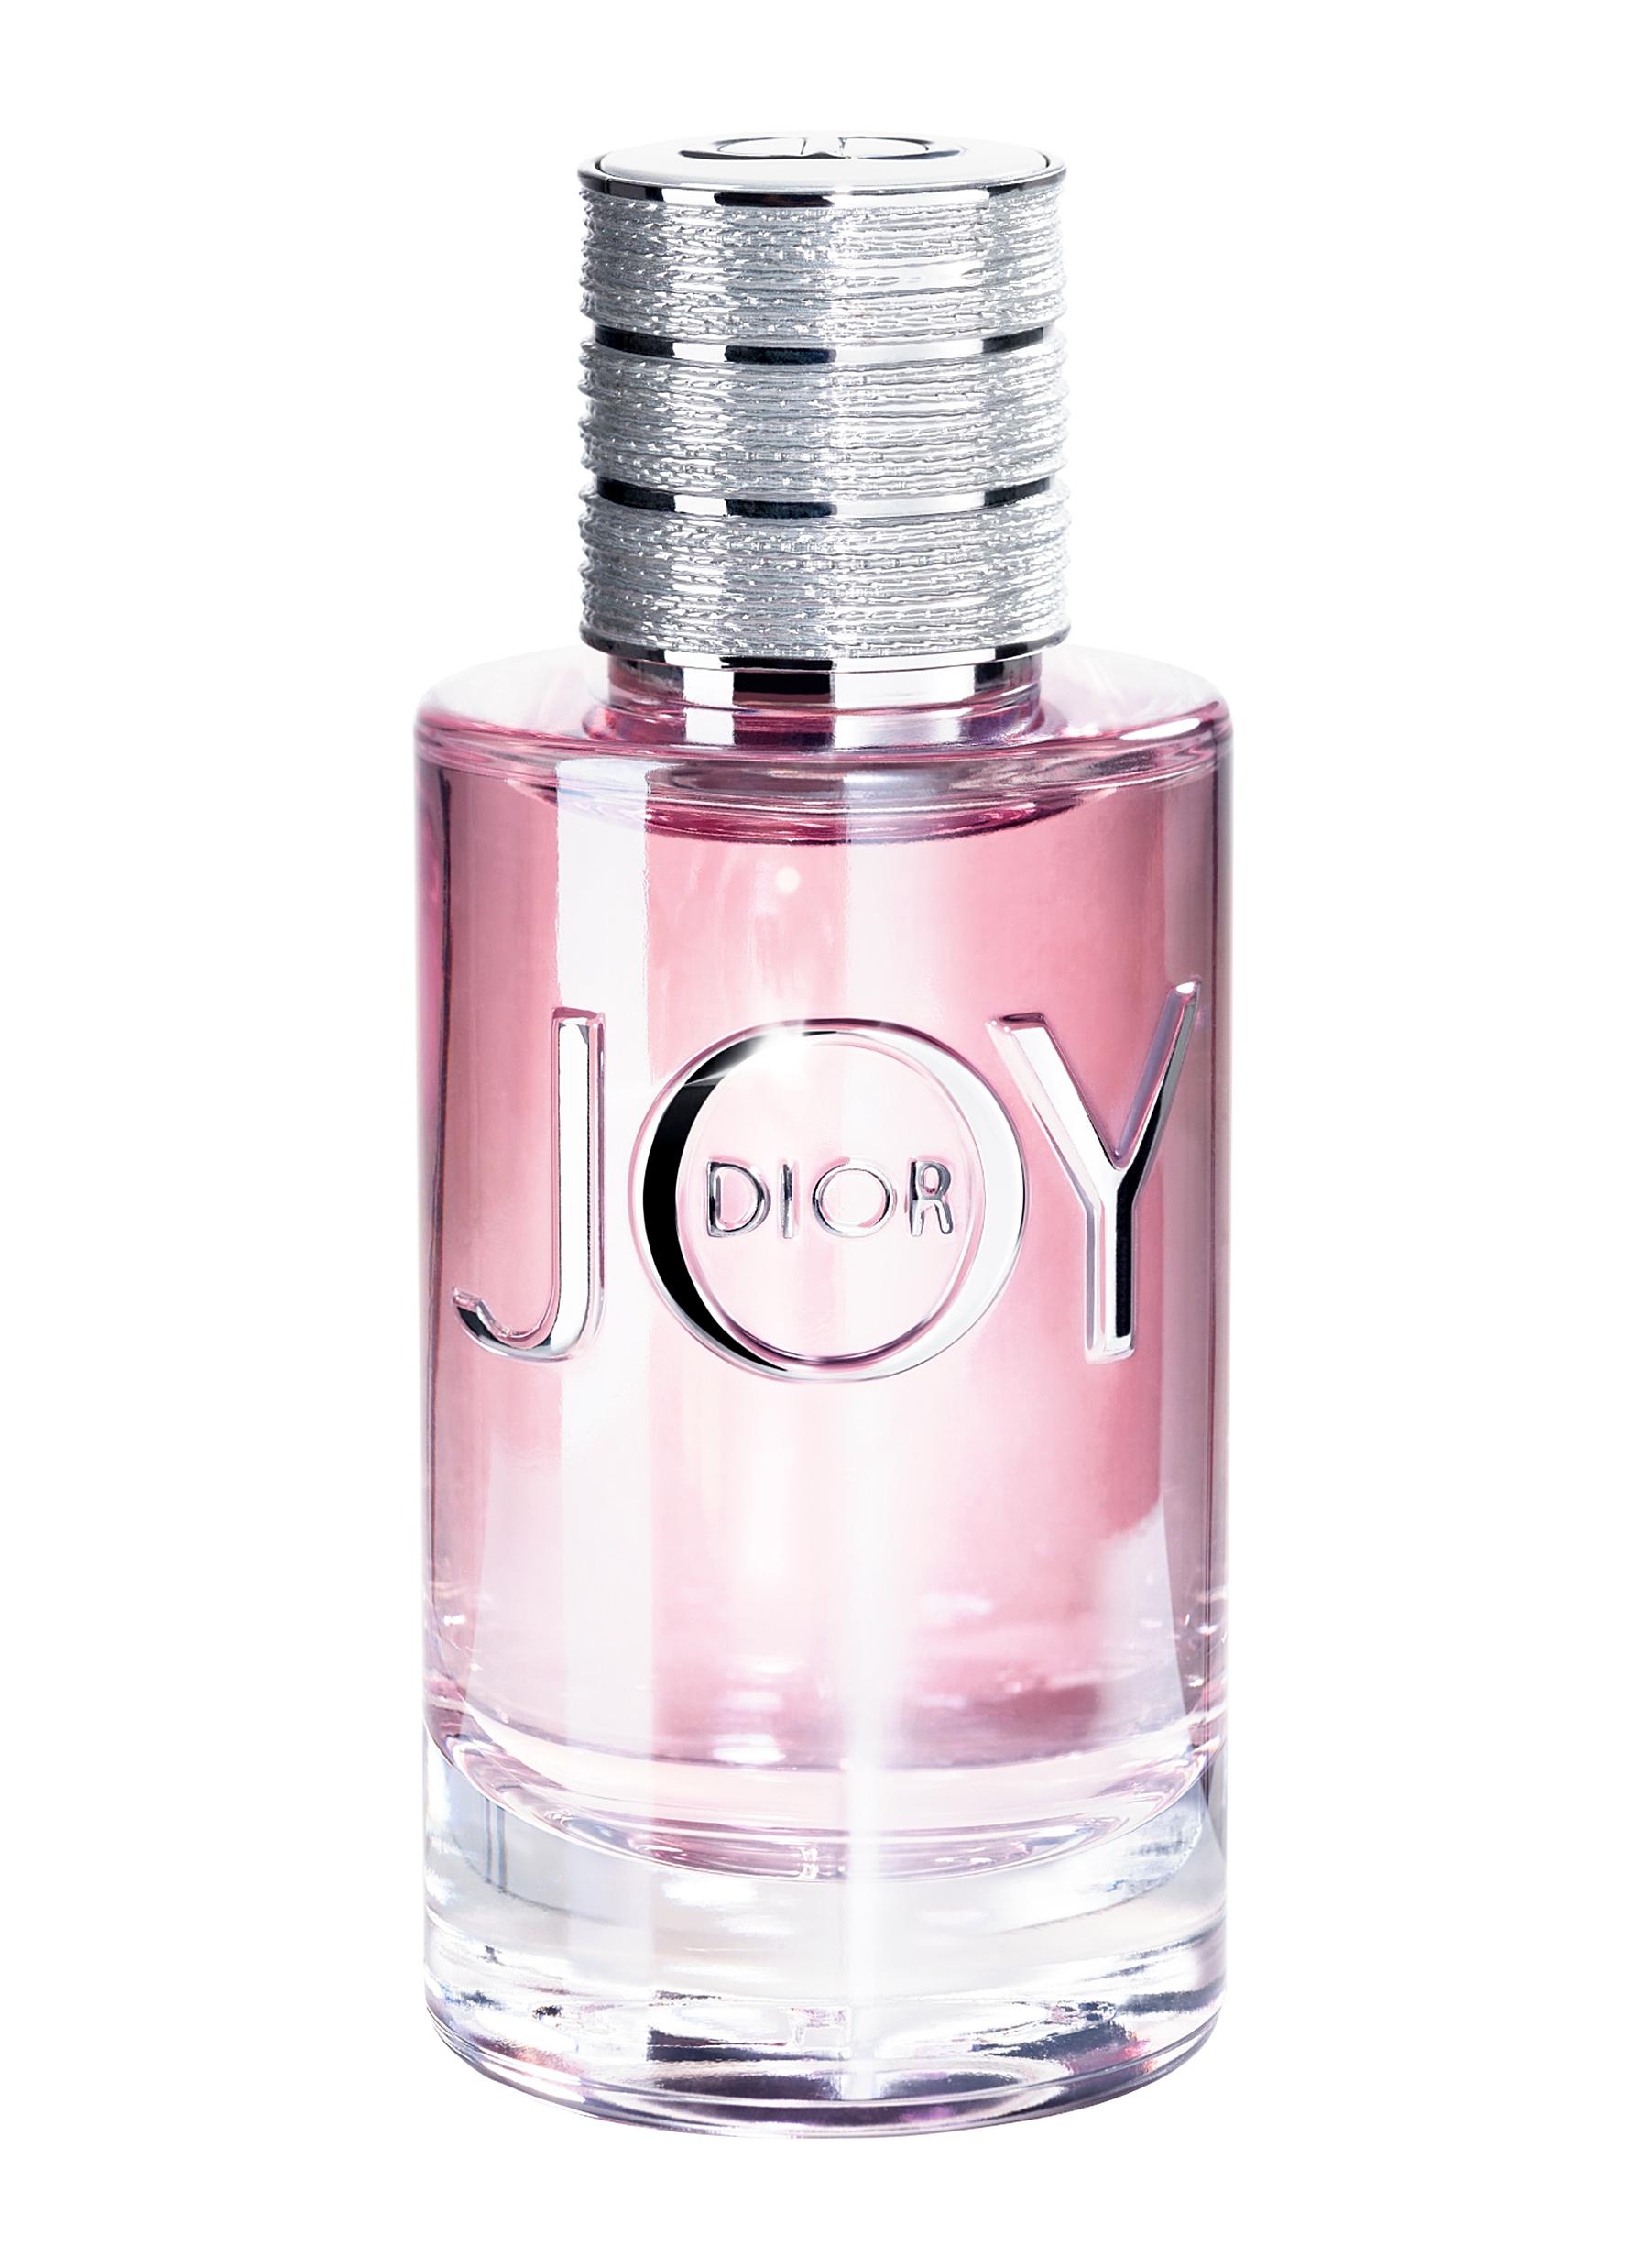 JOY by Dior Eau de Parfum 90ml 